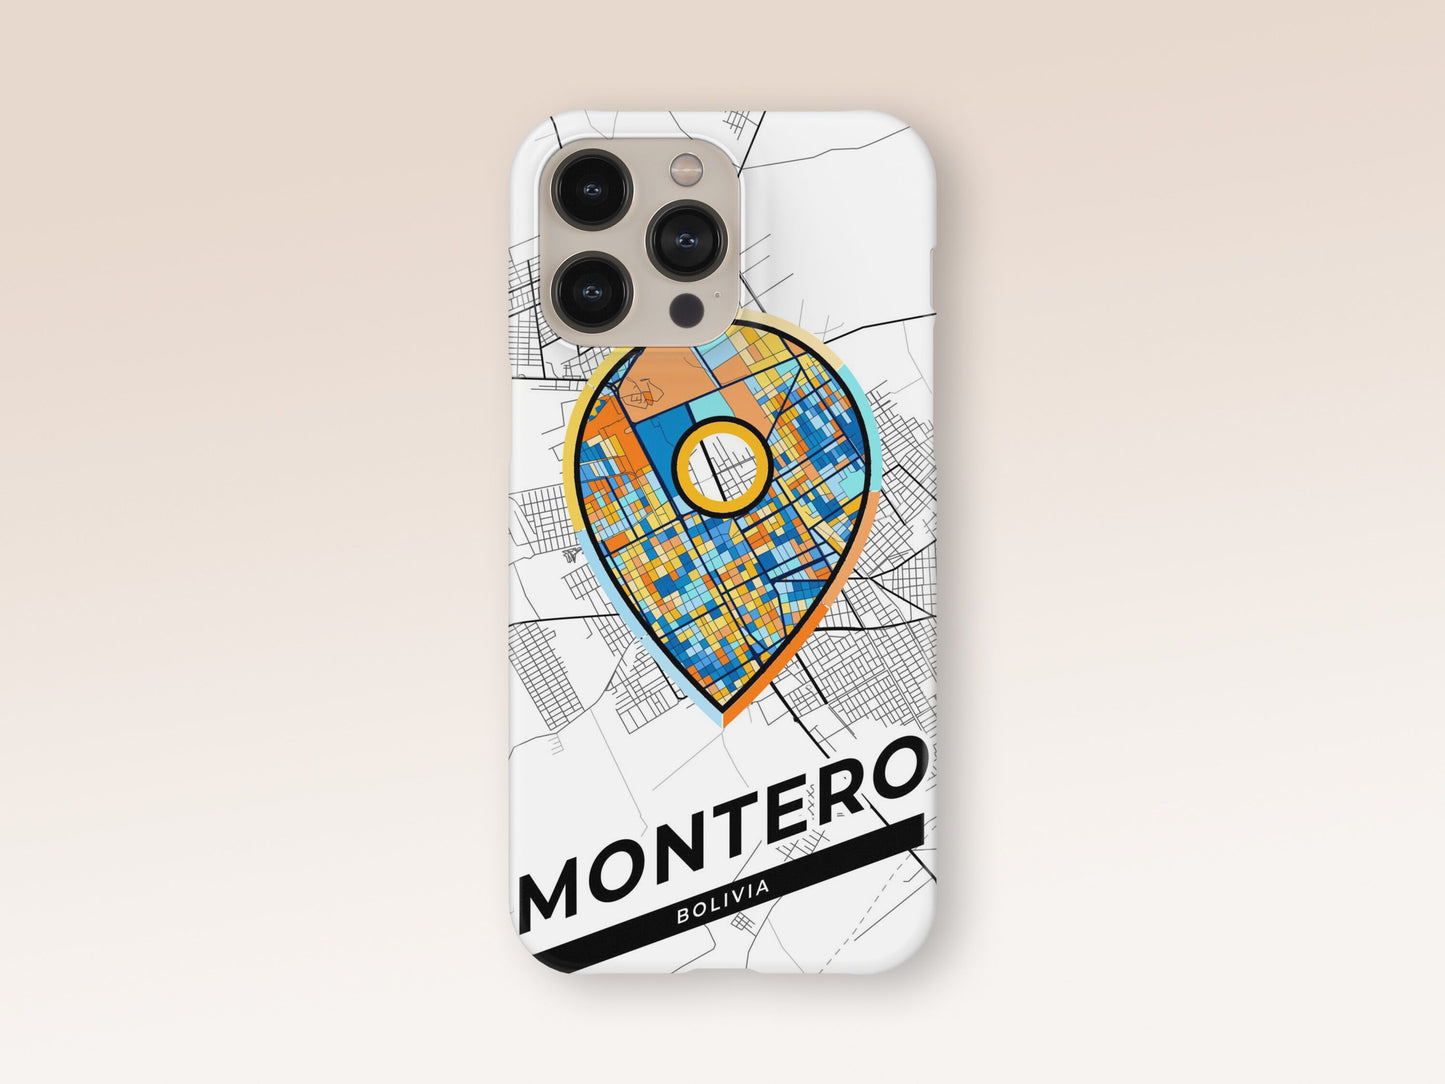 Montero Bolivia slim phone case with colorful icon 1